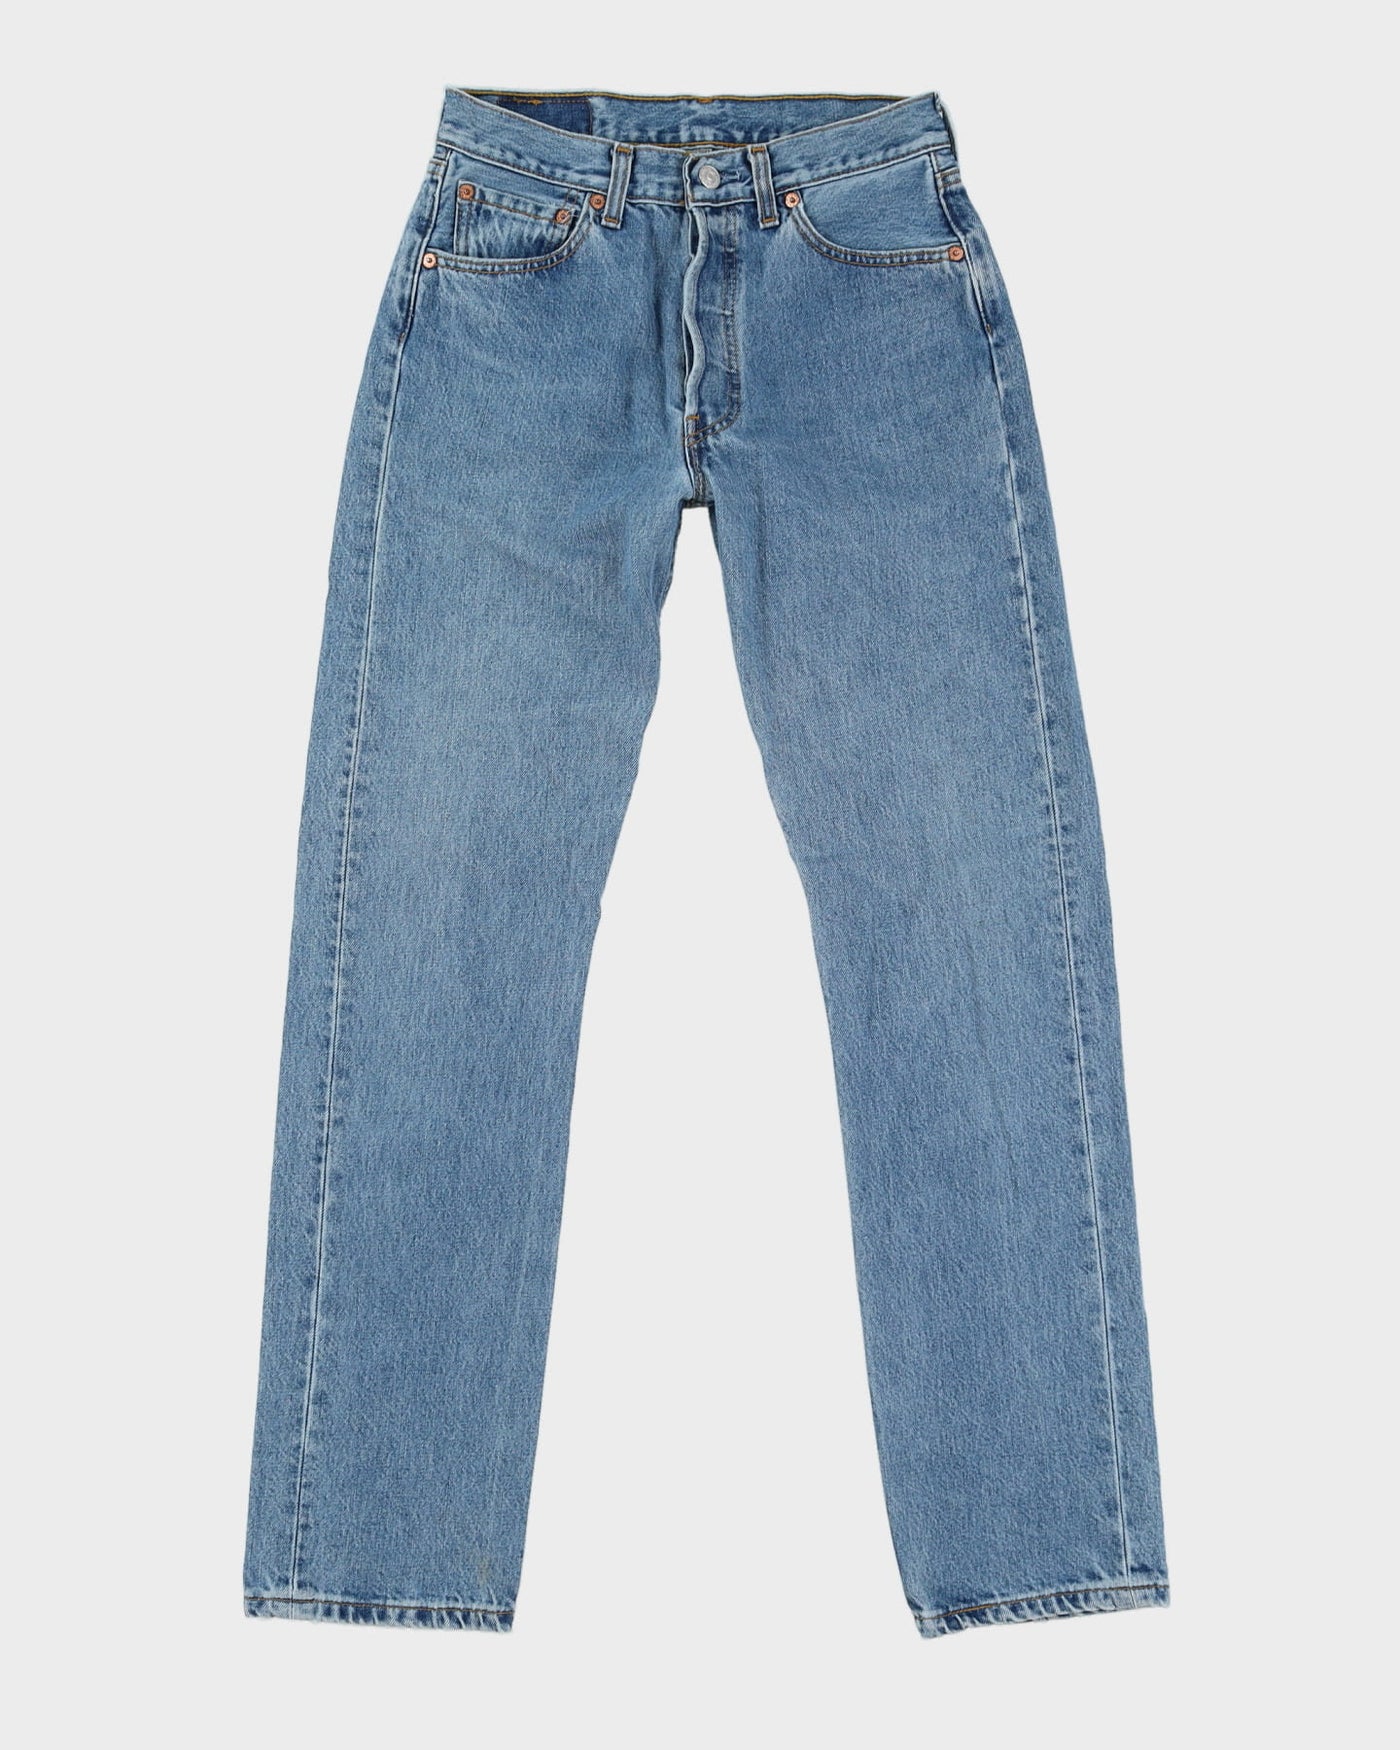 Vintage 90s Levi's 501 Blue Light Wash Jeans - W28 L32